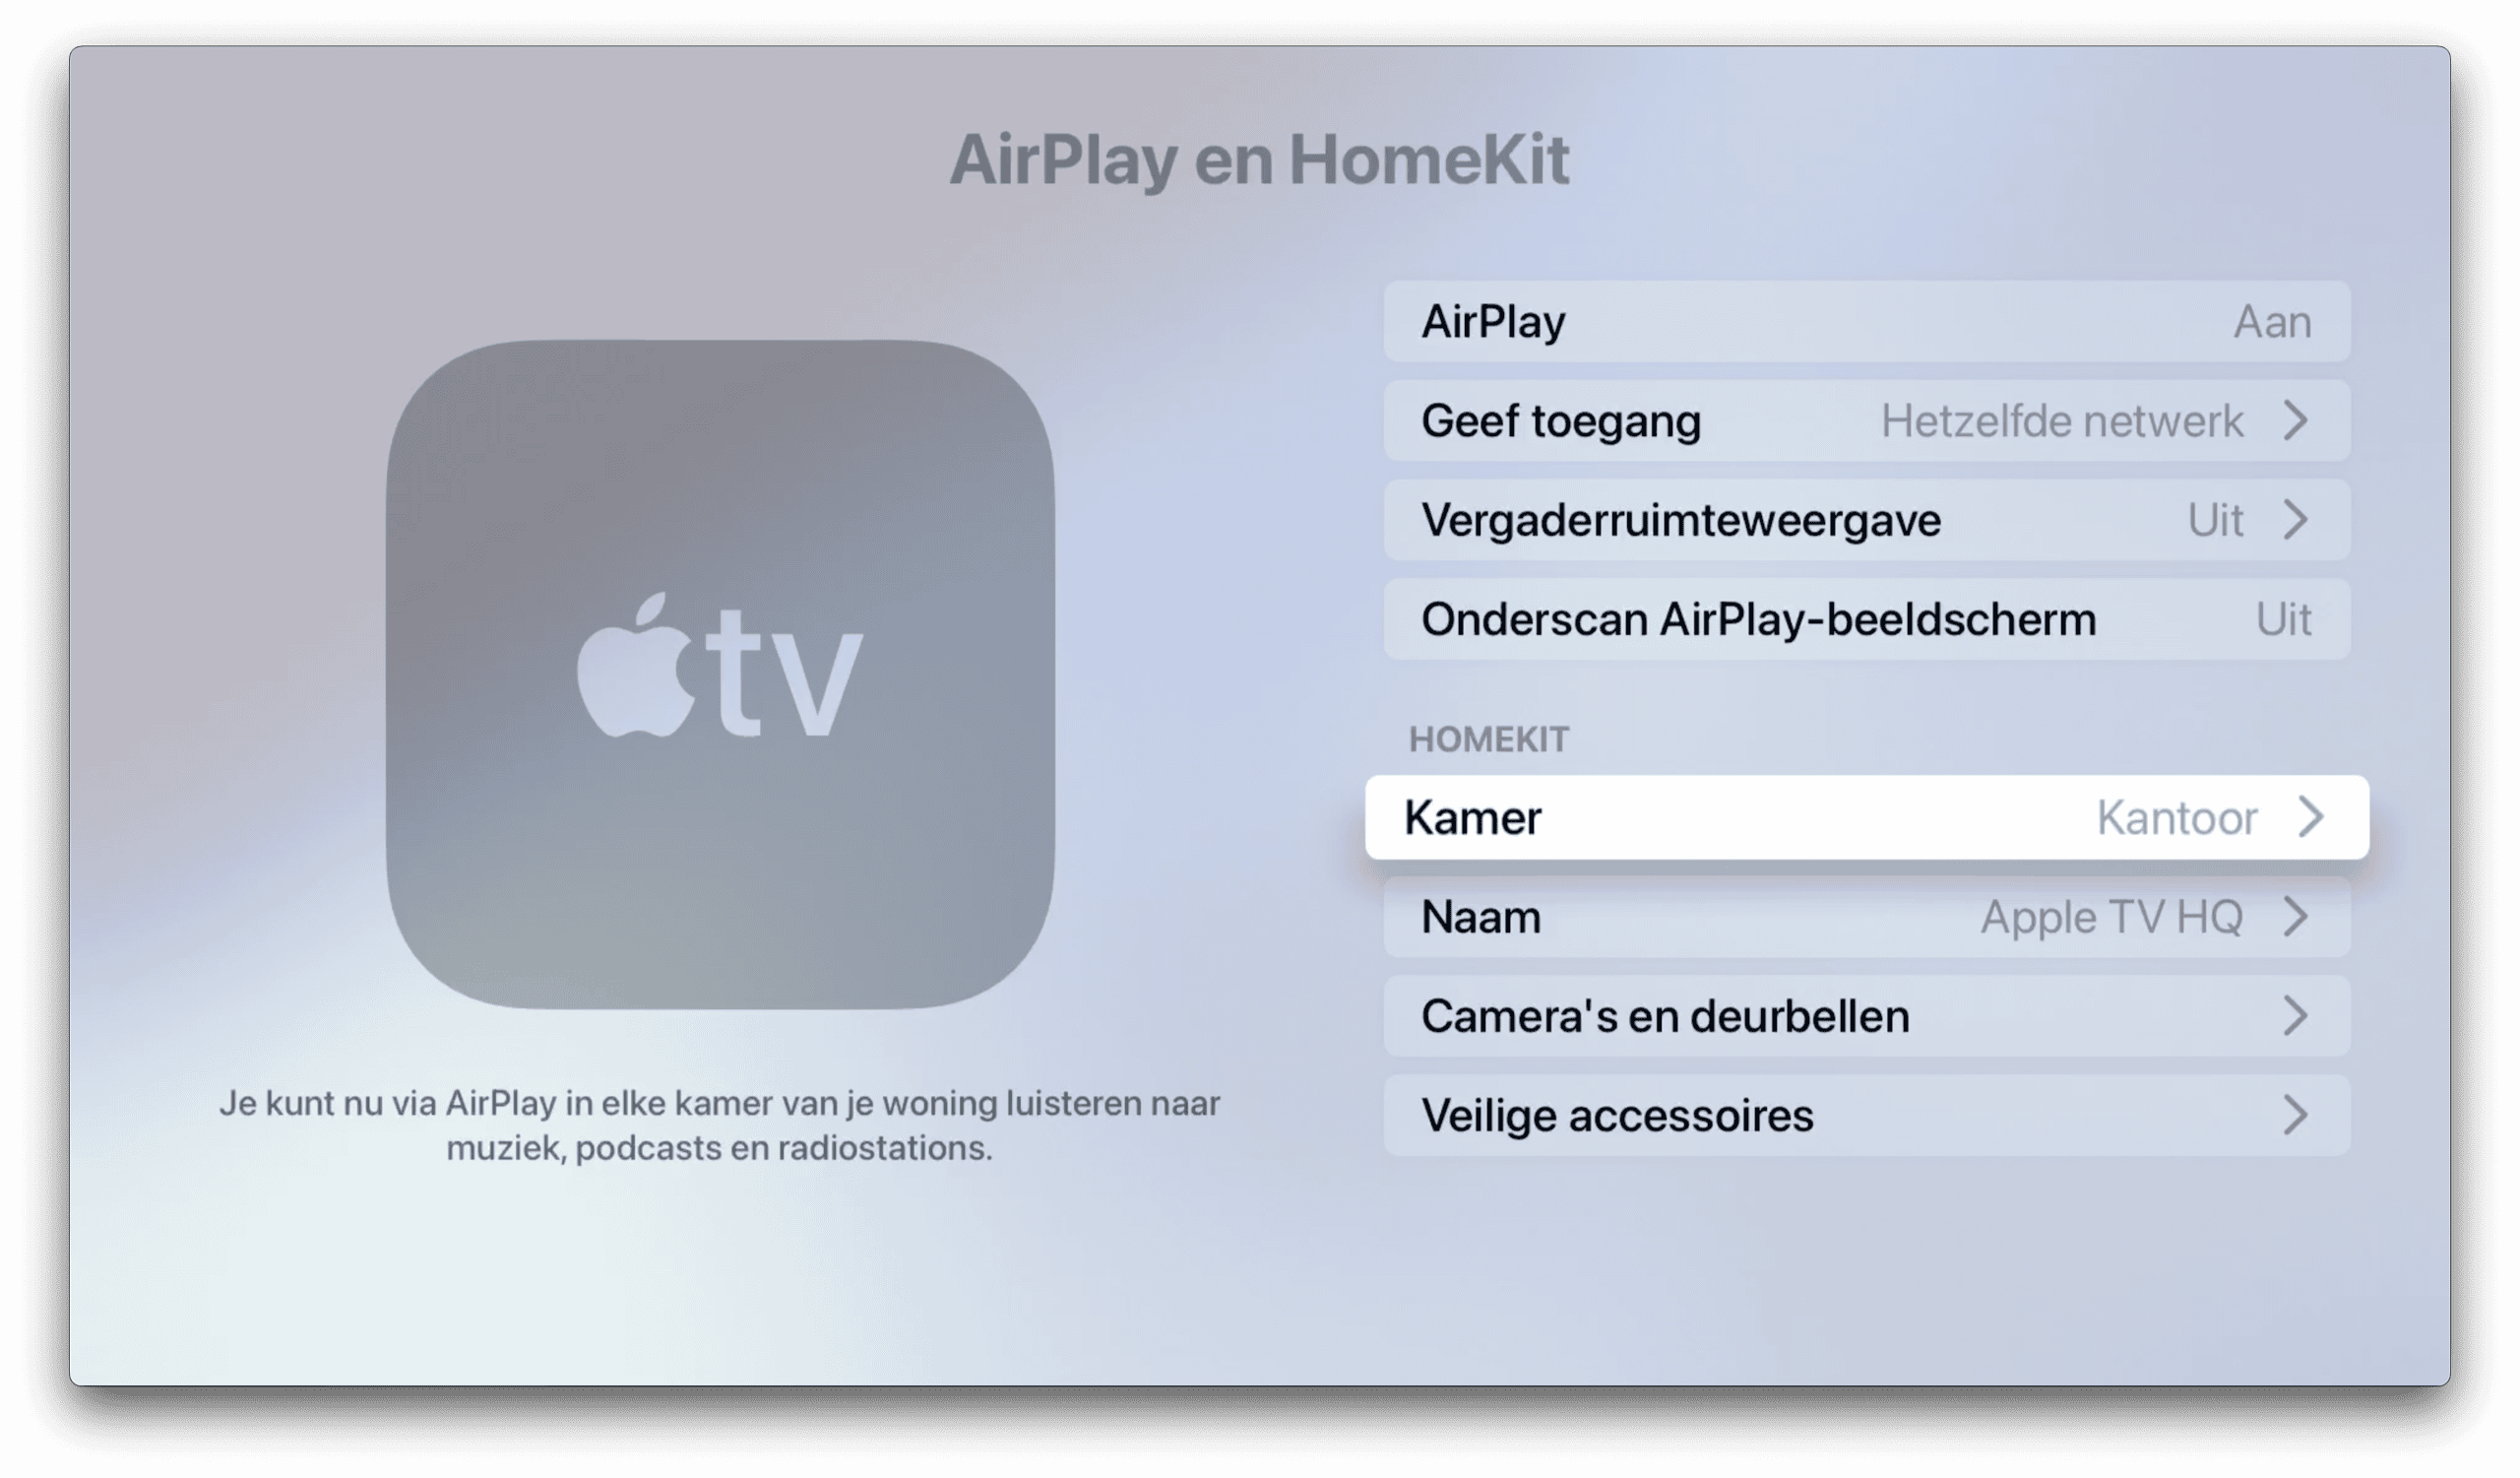 Apple TV als woninghub voor HomeKit instellen